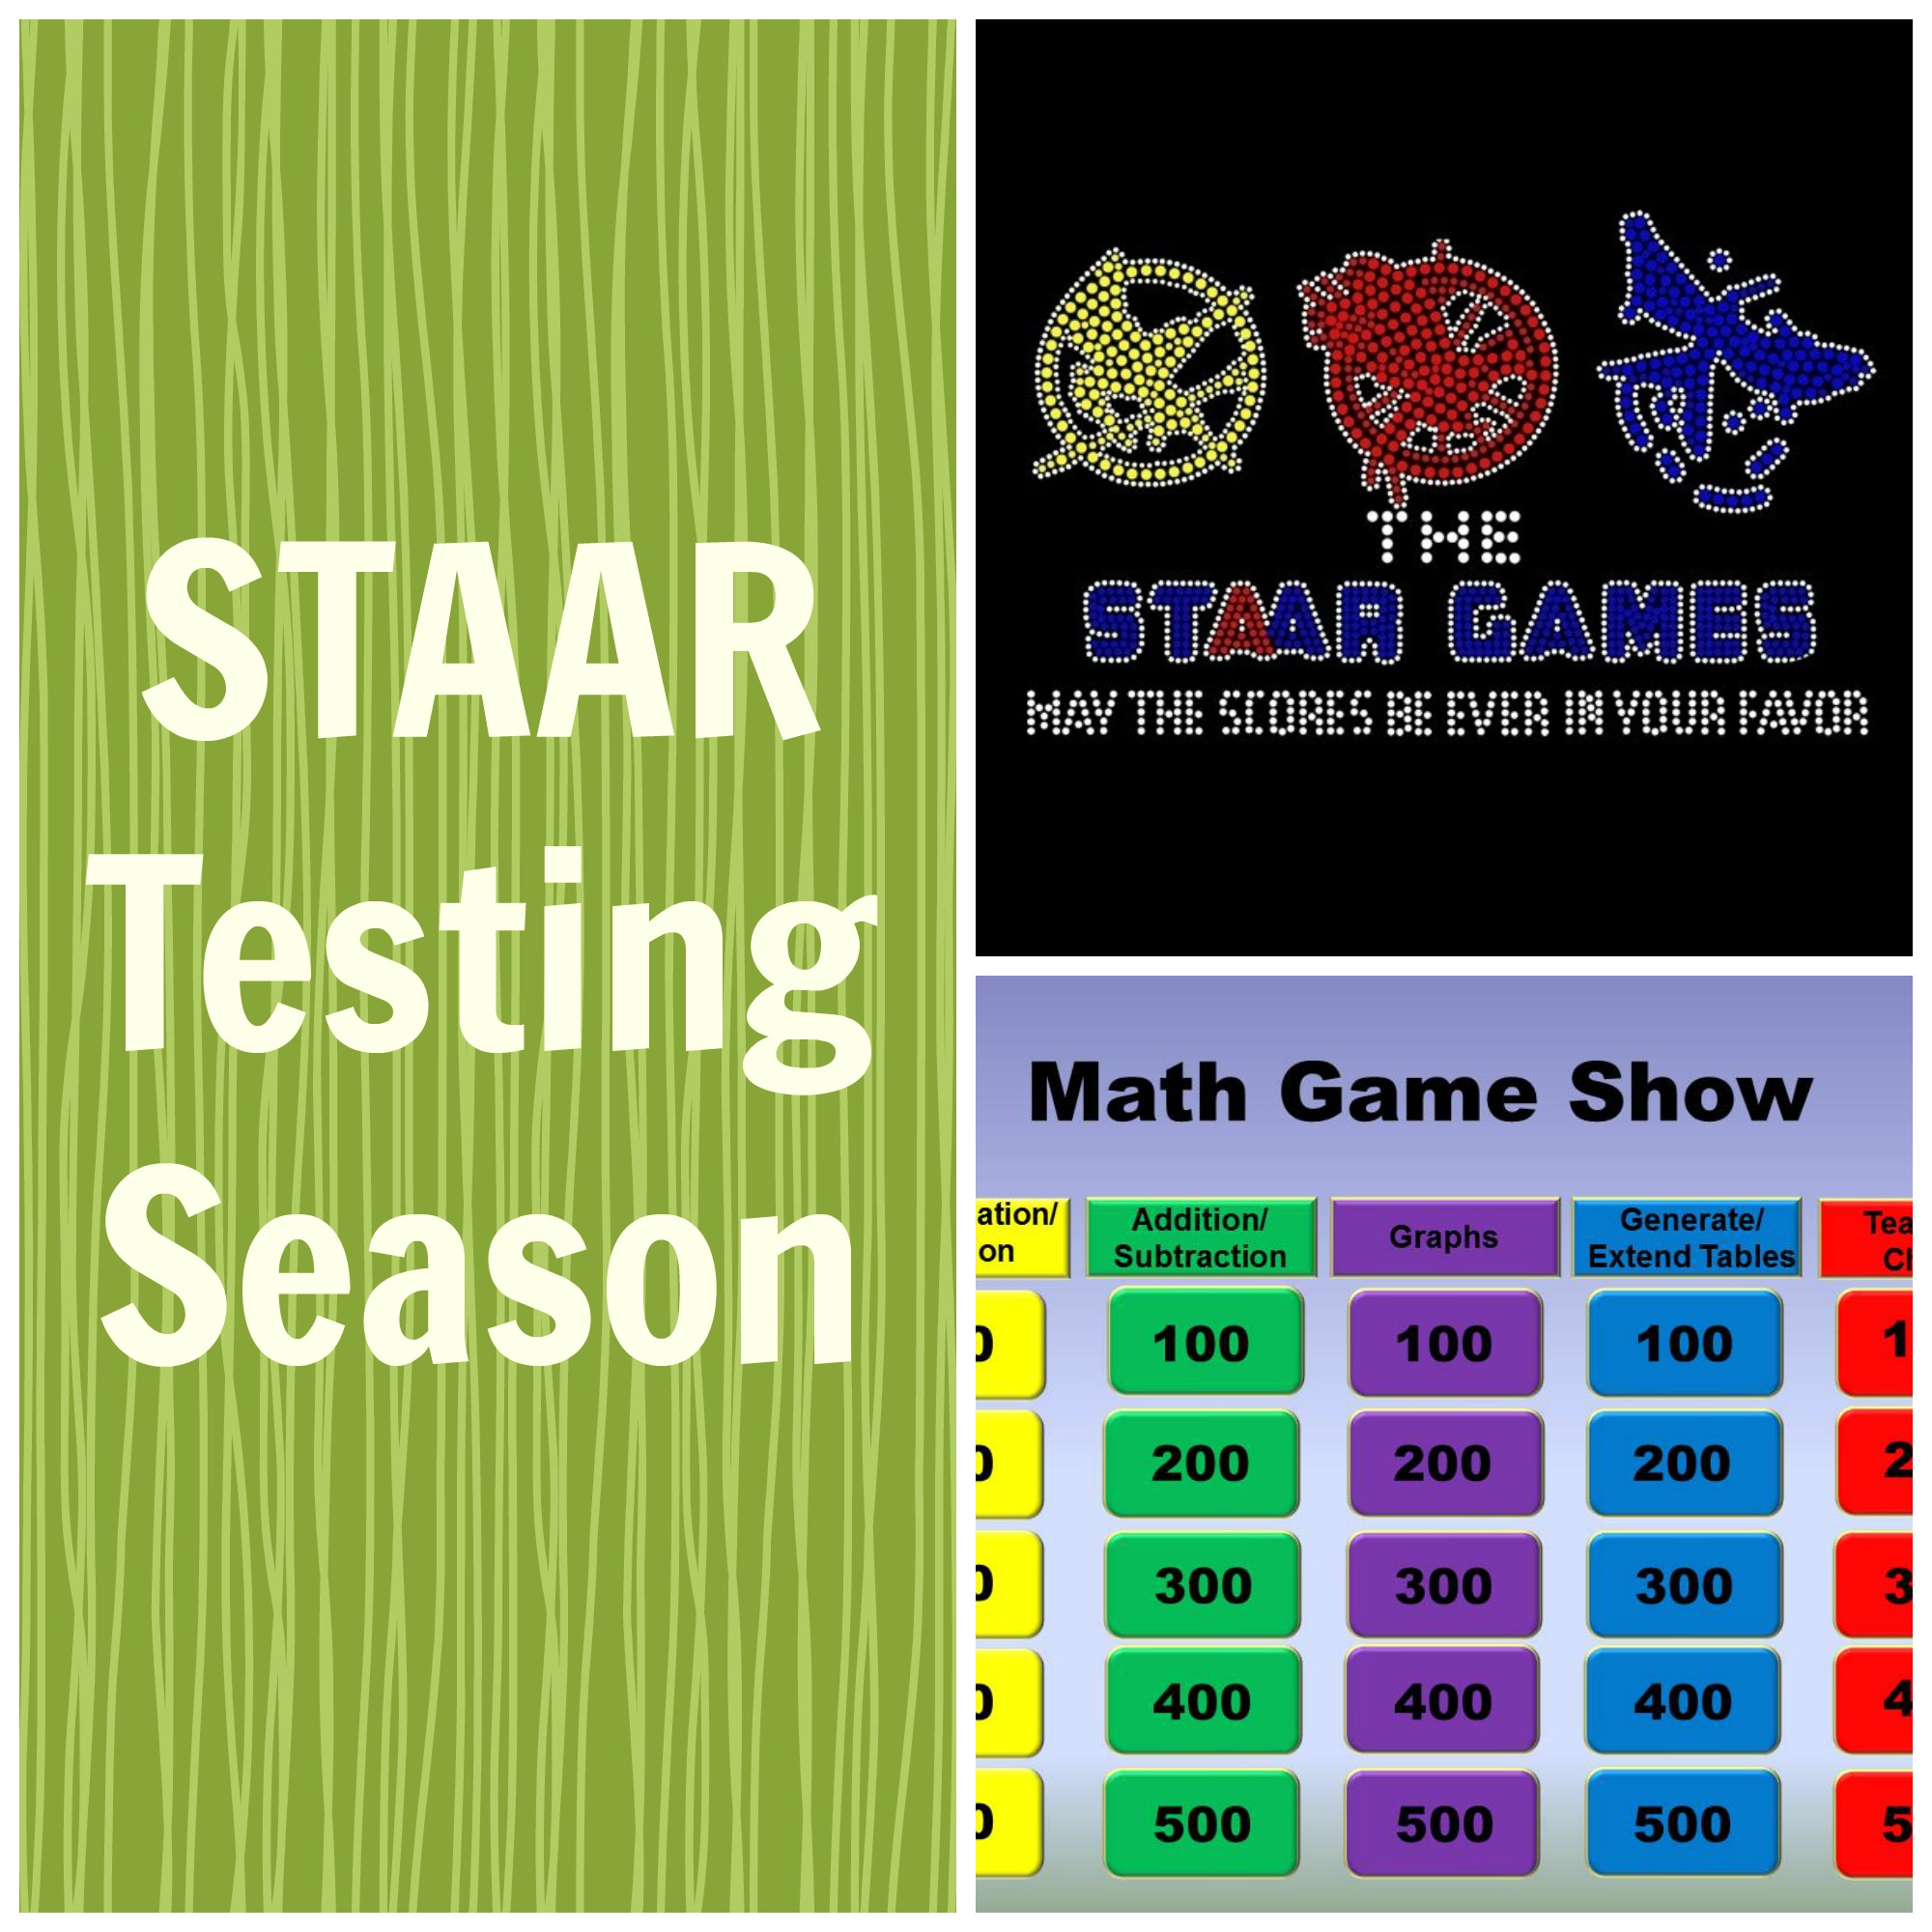 STAAR testing season Love Teaching Kids